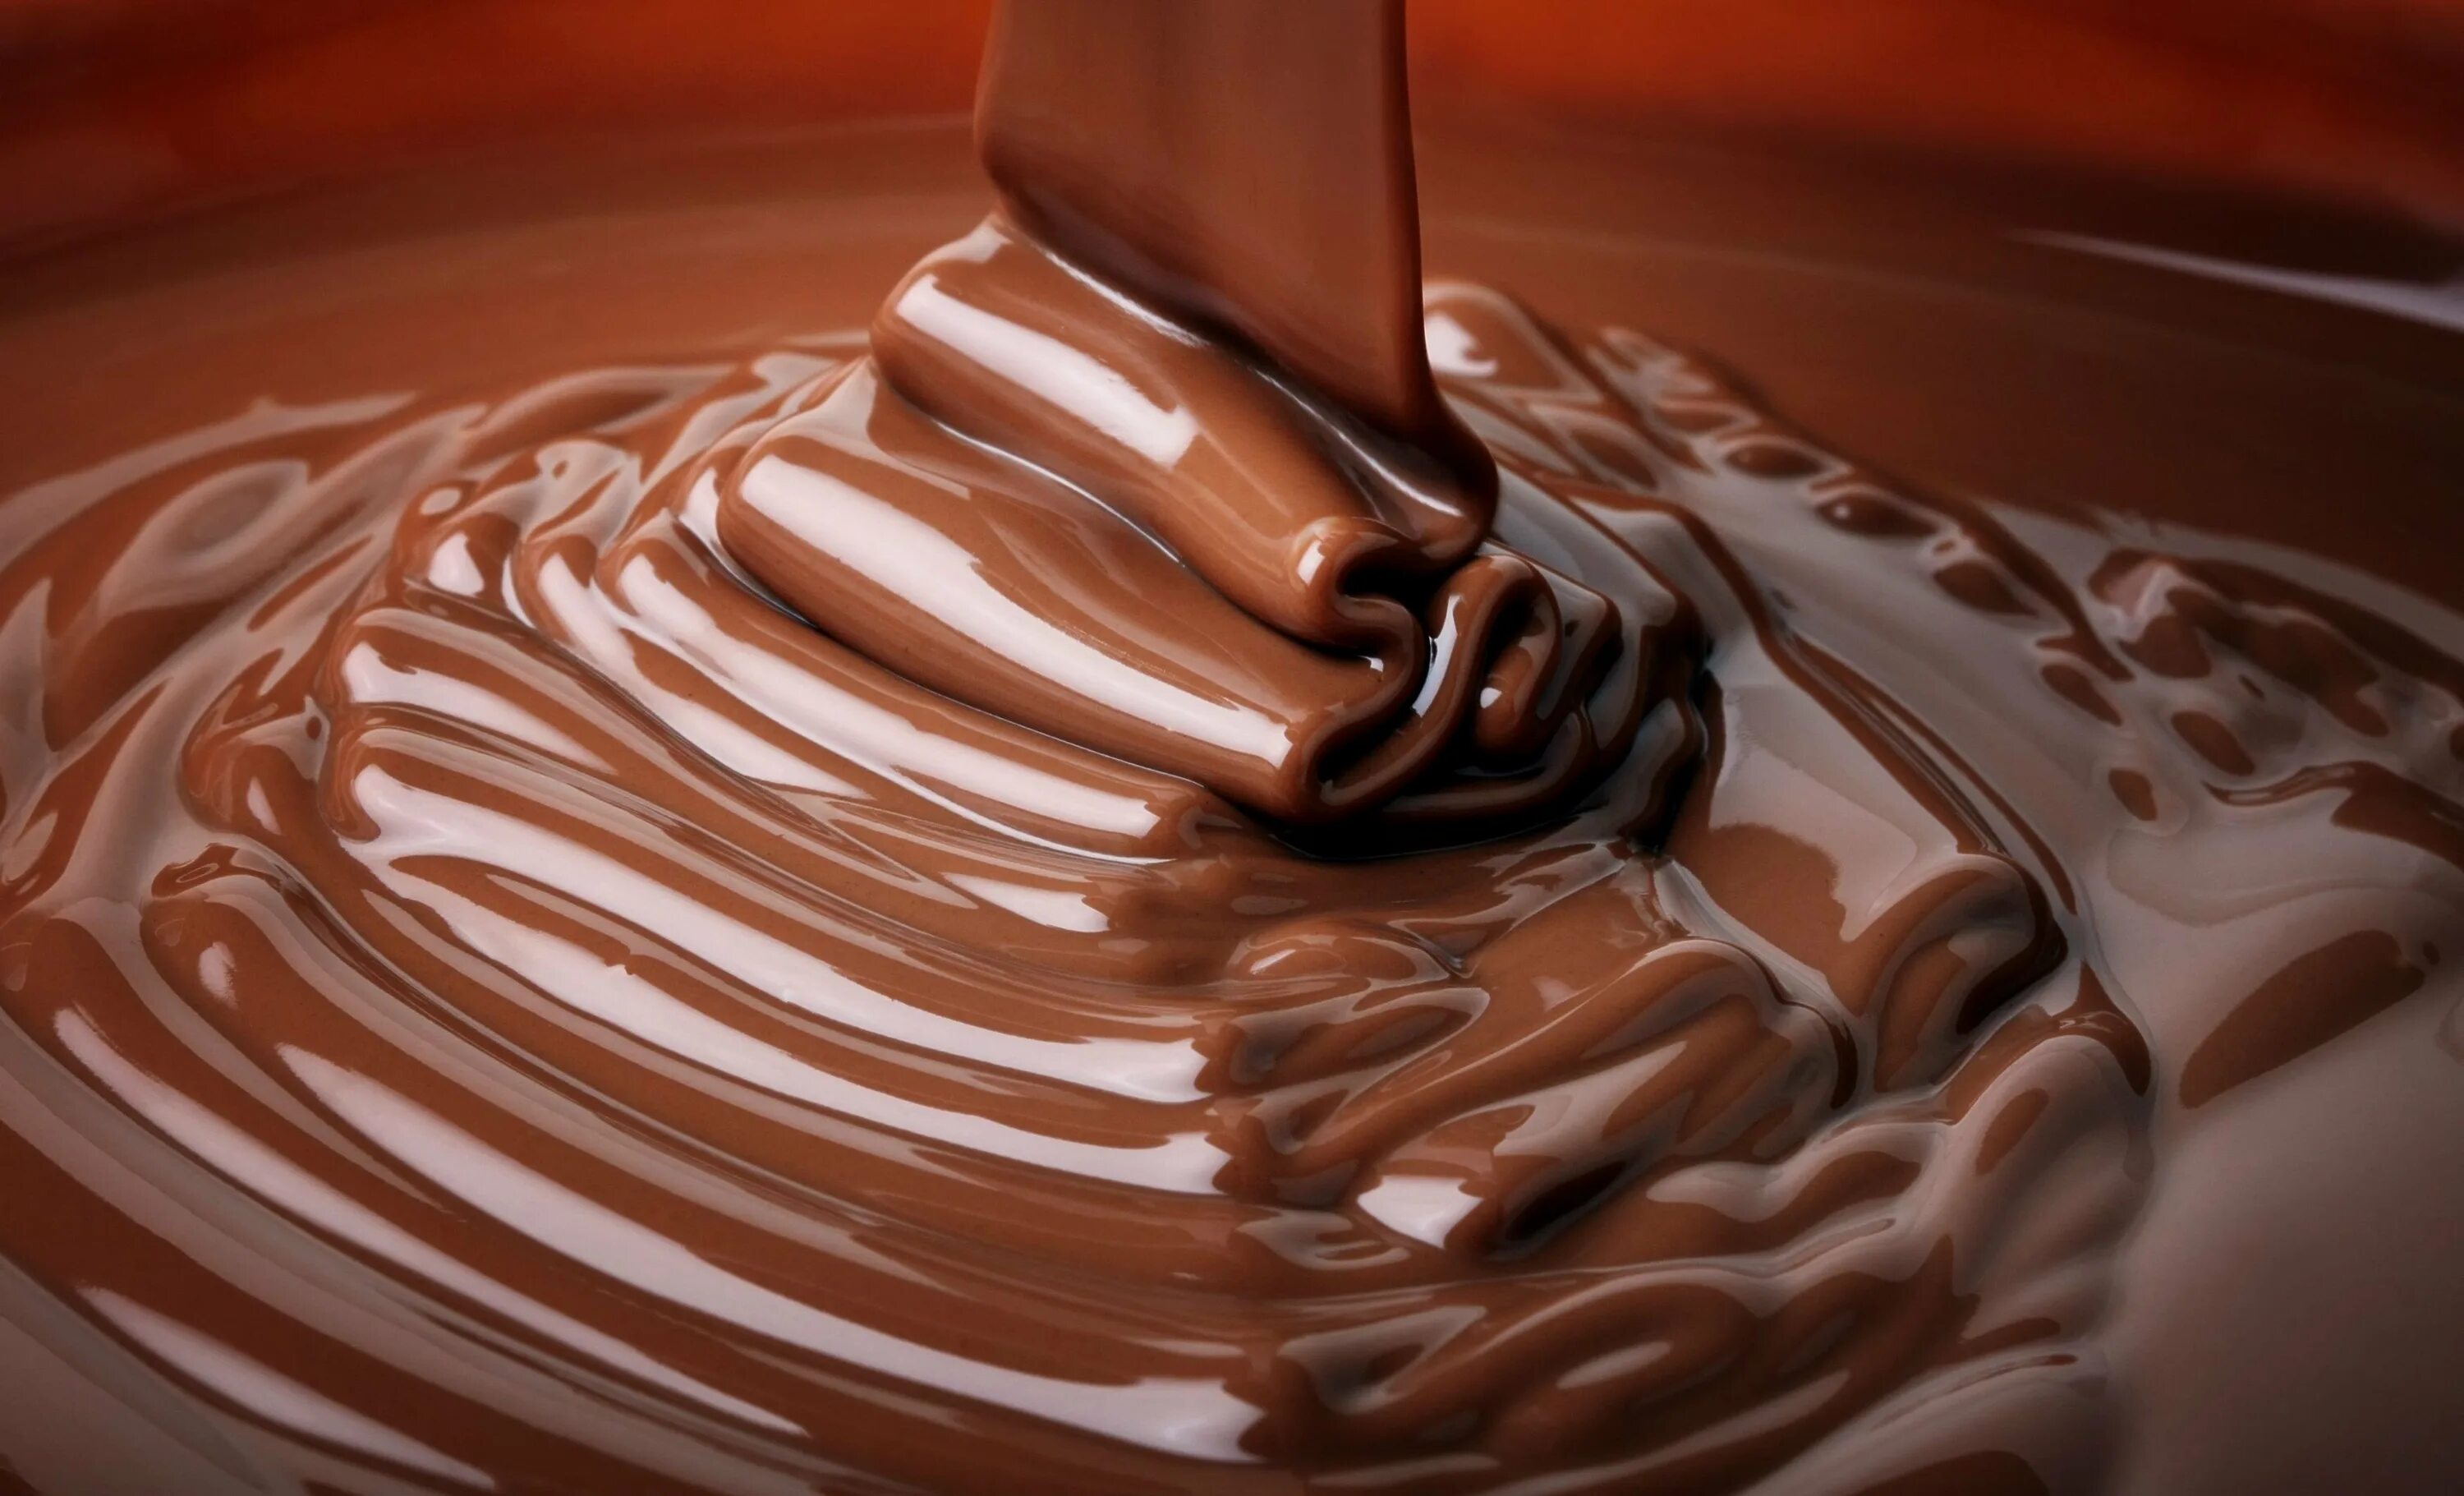 Горячая глазурь. Ганаш шоколадный крем, 250 гр. Шоколадная глазурь кувертюр. Растопленный шоколад. Жидкий шоколад.